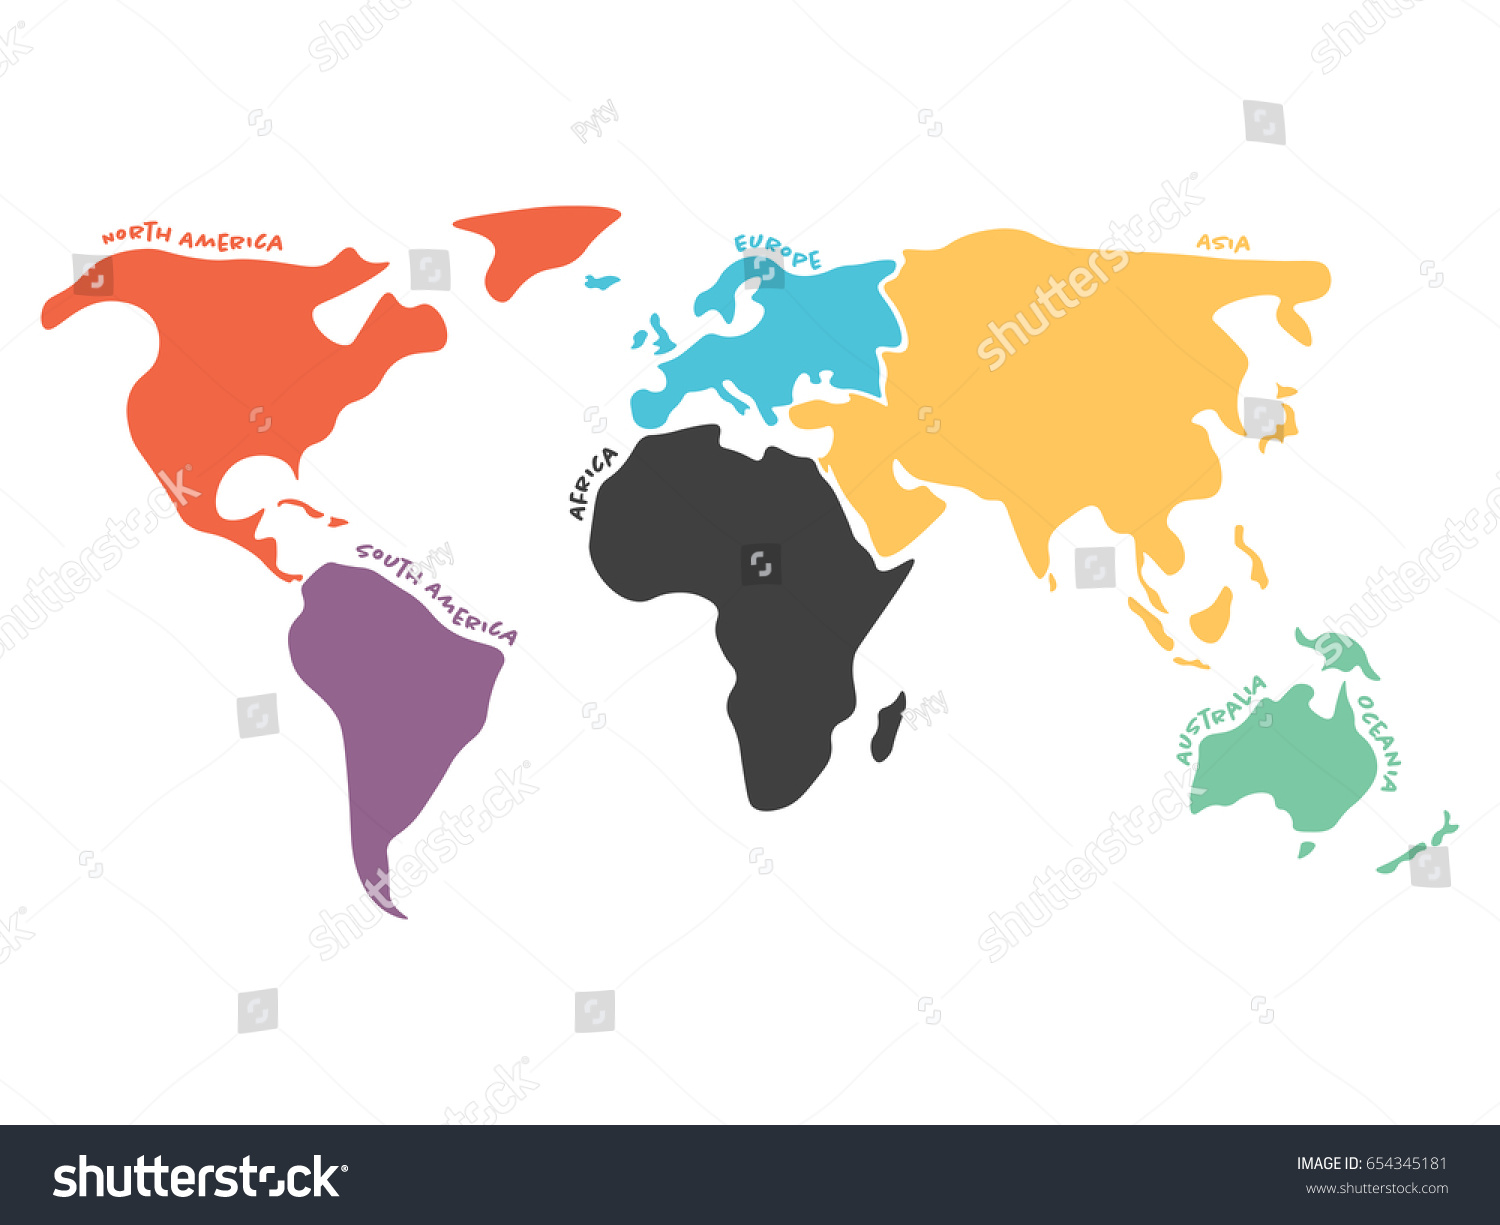 多彩色の世界地図を 北米 南米 アフリカ ヨーロッパ アジア オーストラリアのオセアニアの6大陸に分割 大陸名のシルエットベクターマップの簡略化 のベクター画像素材 ロイヤリティフリー